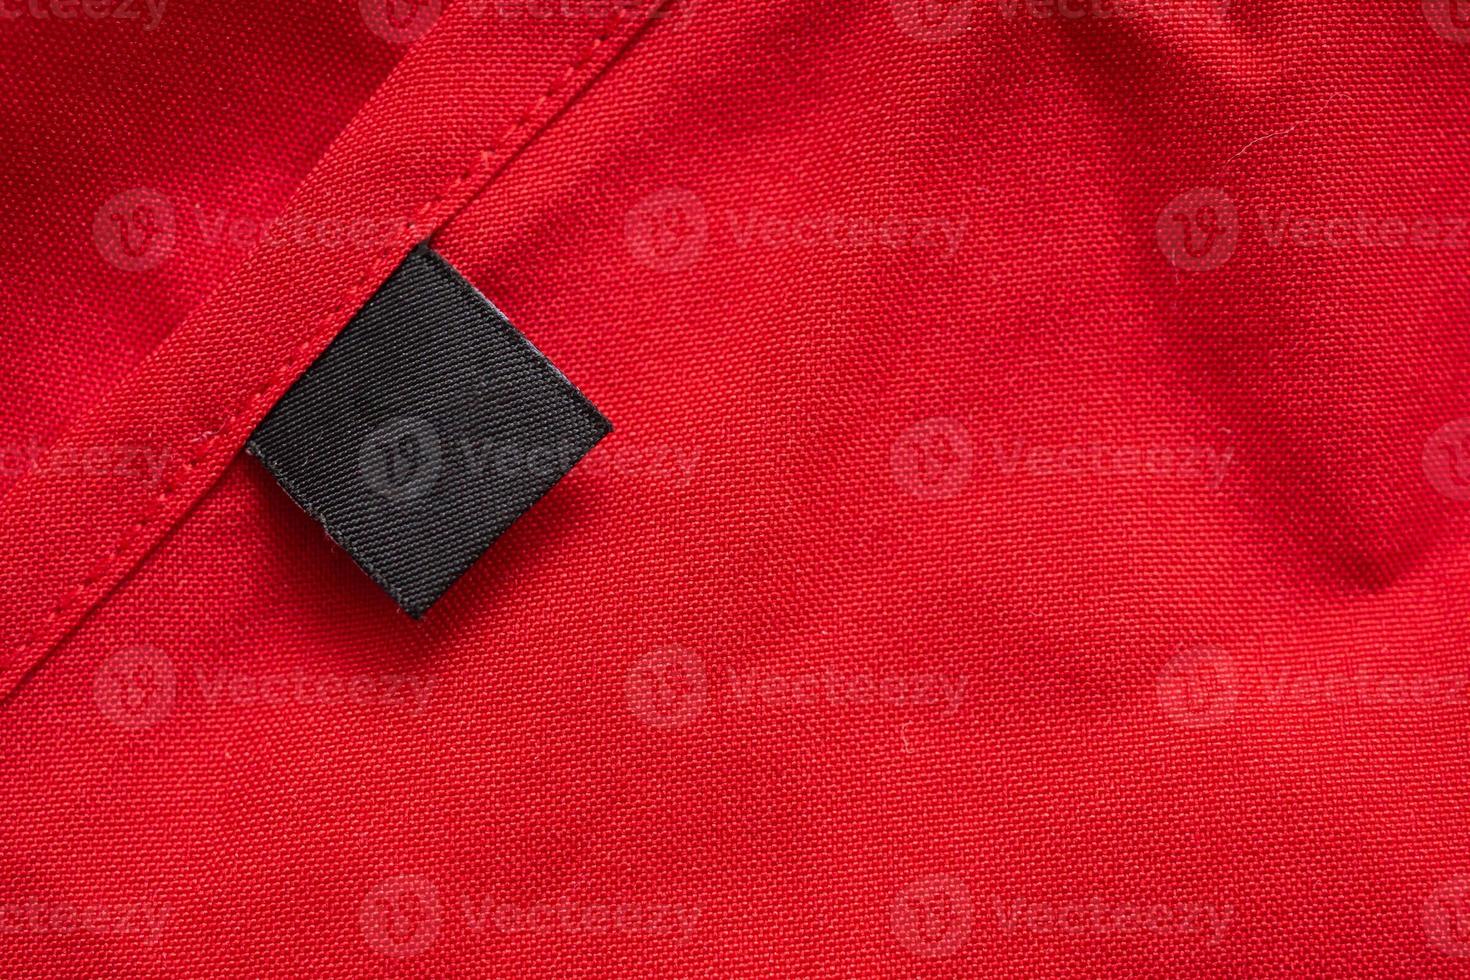 etiqueta de roupas de lavanderia preta em branco na textura de tecido de cor vermelha foto